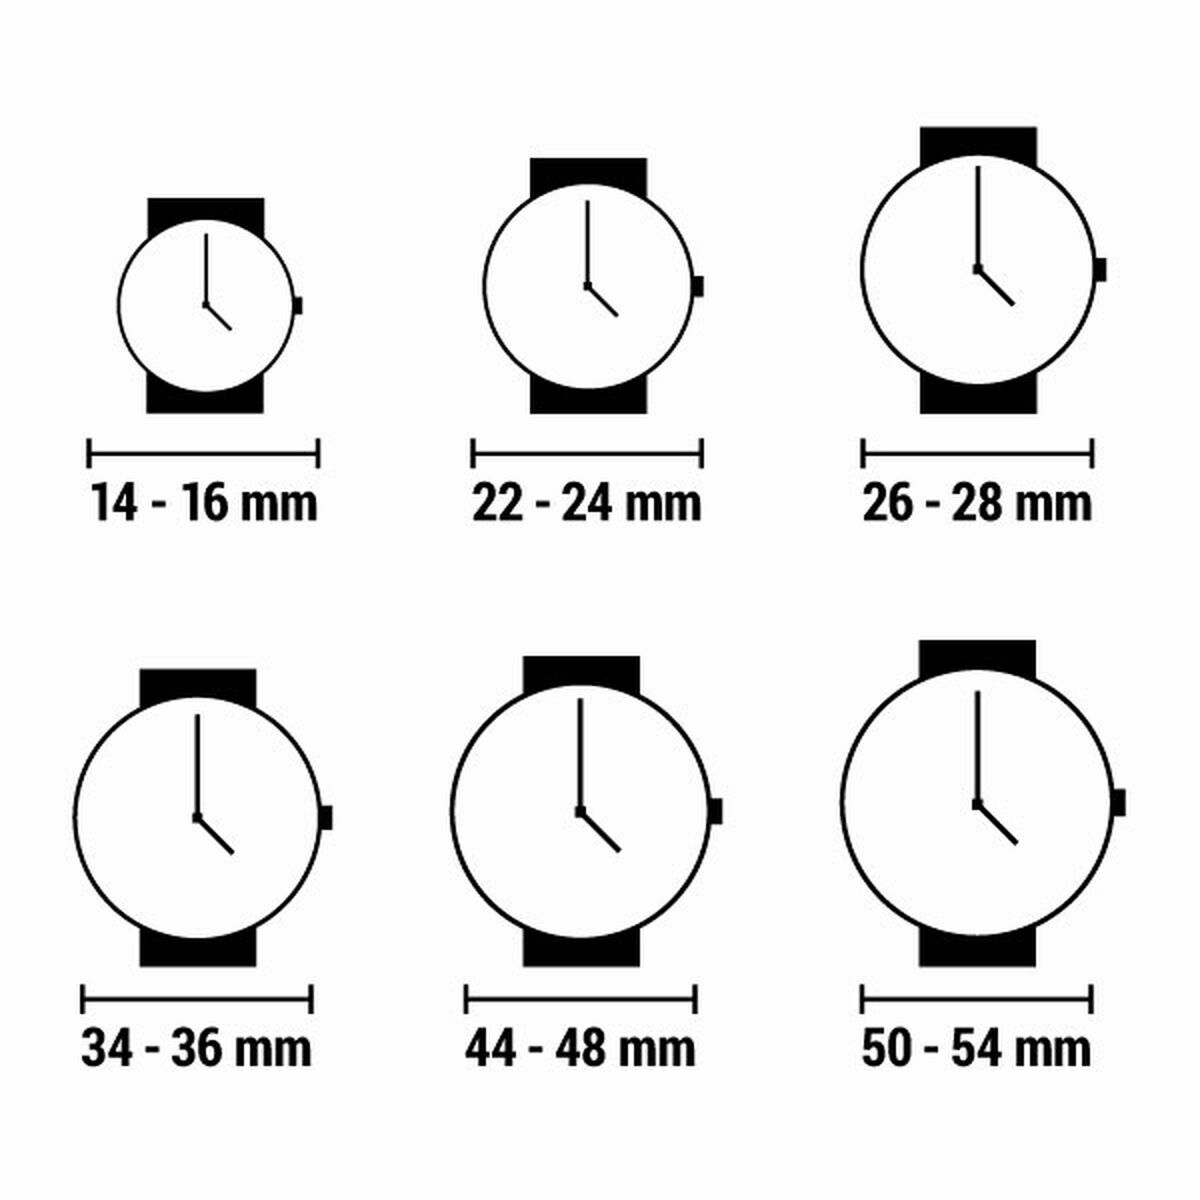 Horloge Dames Casio COLLECTION Blauw (Ø 34 mm)